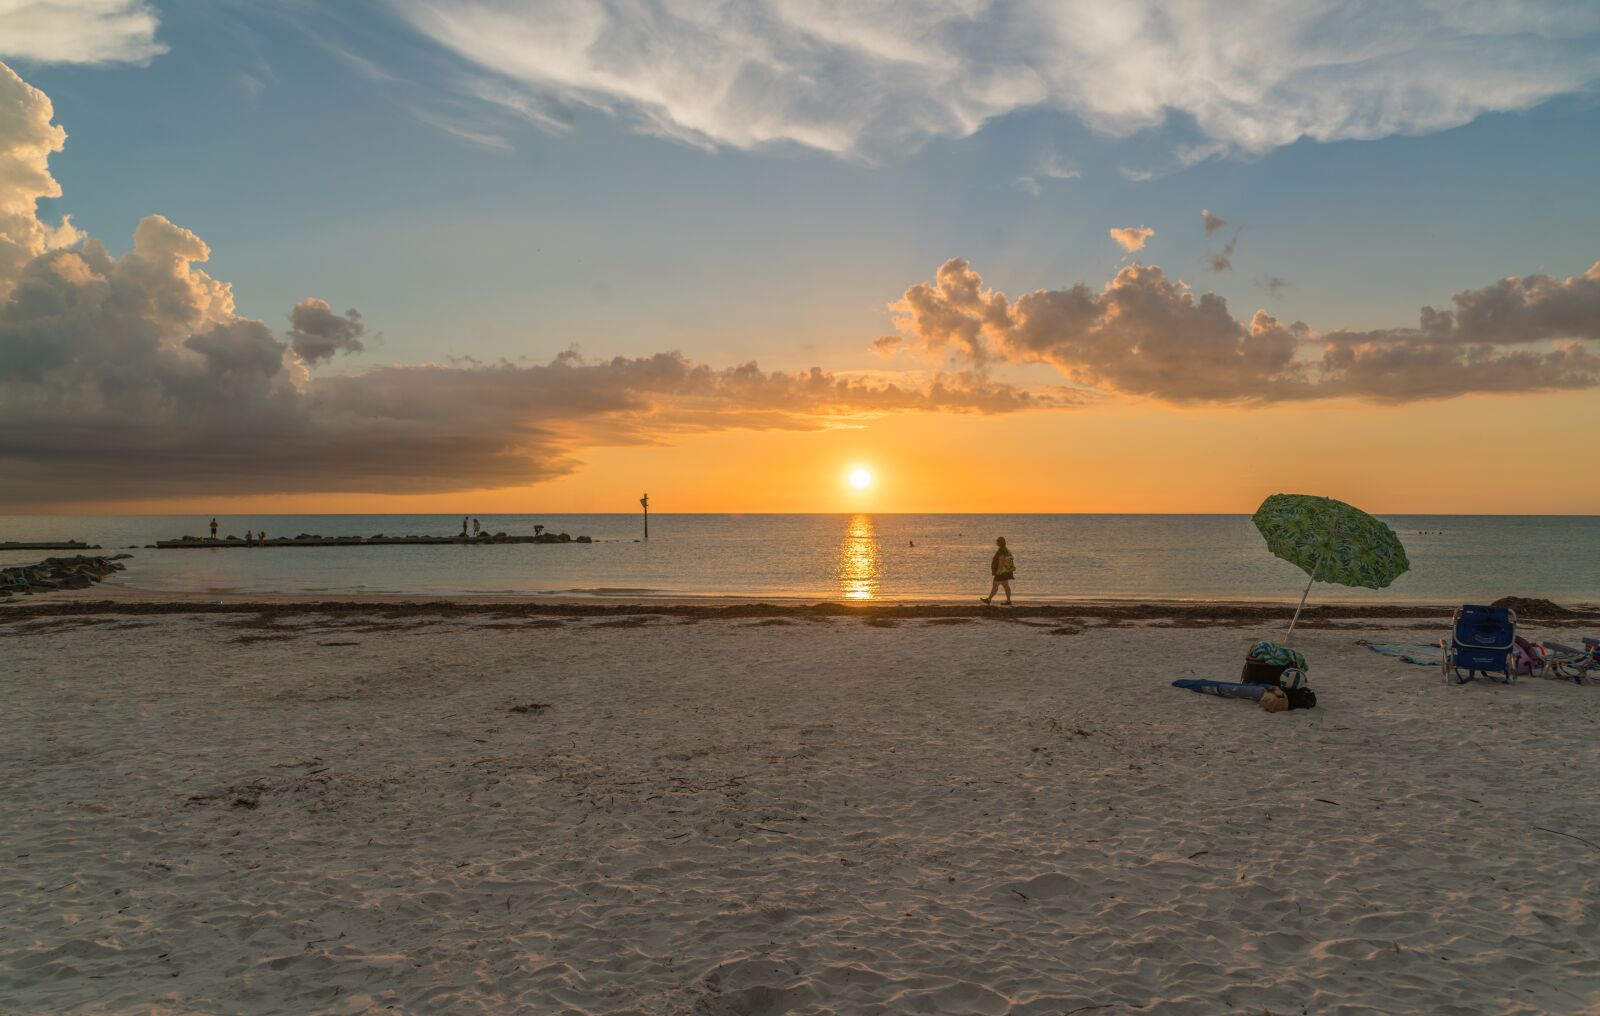 Sony FE 24-240mm F3.5-6.3 OSS sample photo. Ocean, sunset, beach photography